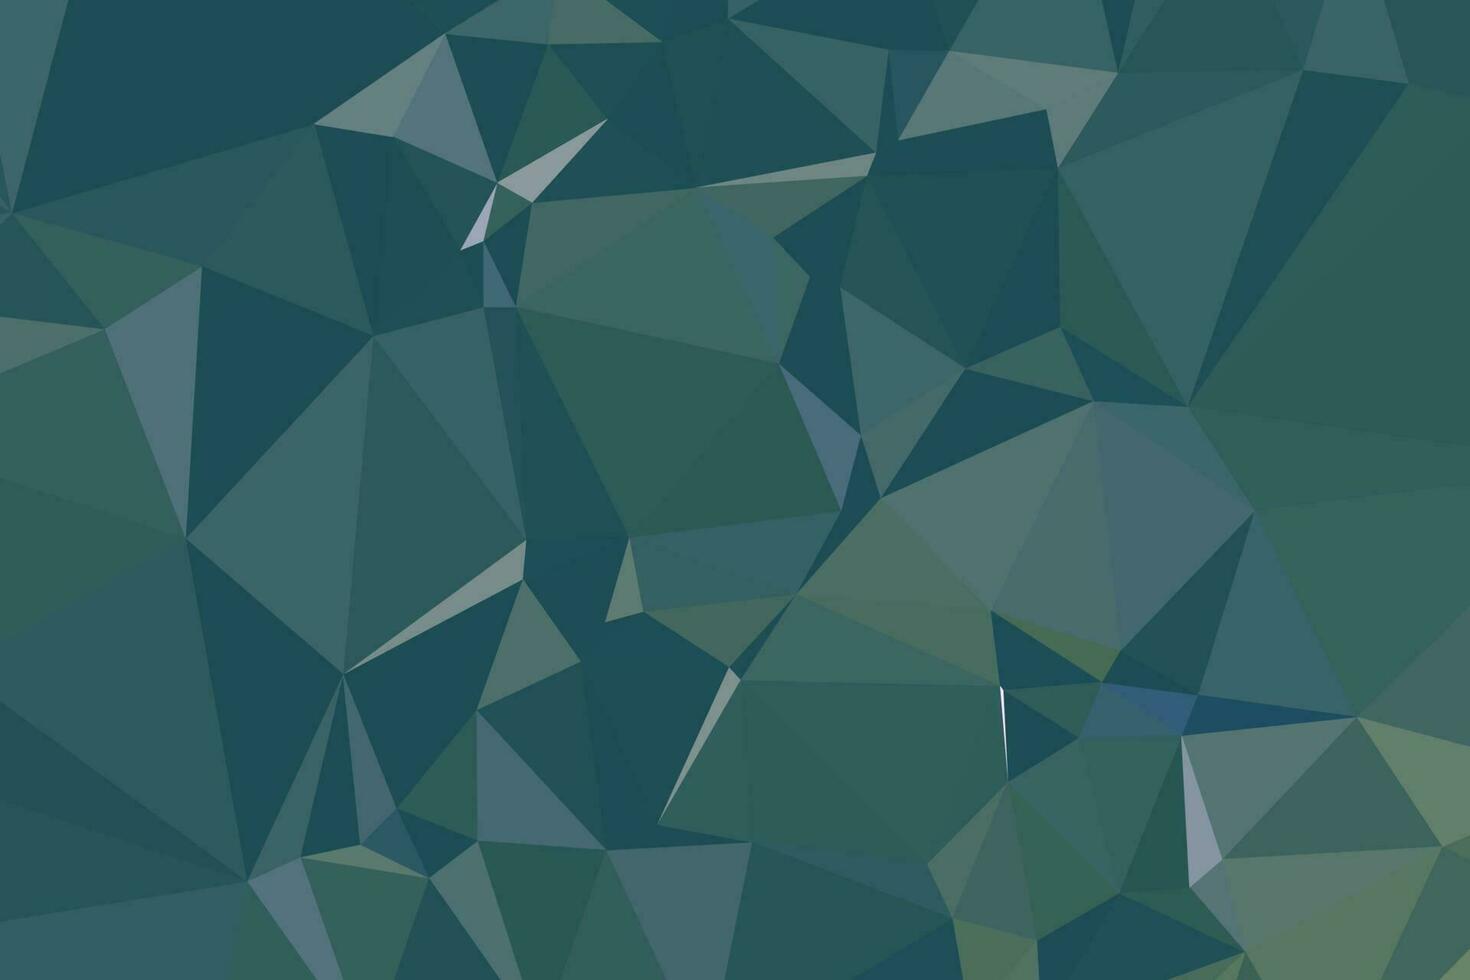 abstrakter strukturierter dunkelgrüner polygonaler Hintergrund. Low-Poly-Geometrie bestehend aus Dreiecken unterschiedlicher Größe und Farbe. verwendung in design cover, präsentation, visitenkarte oder website. vektor